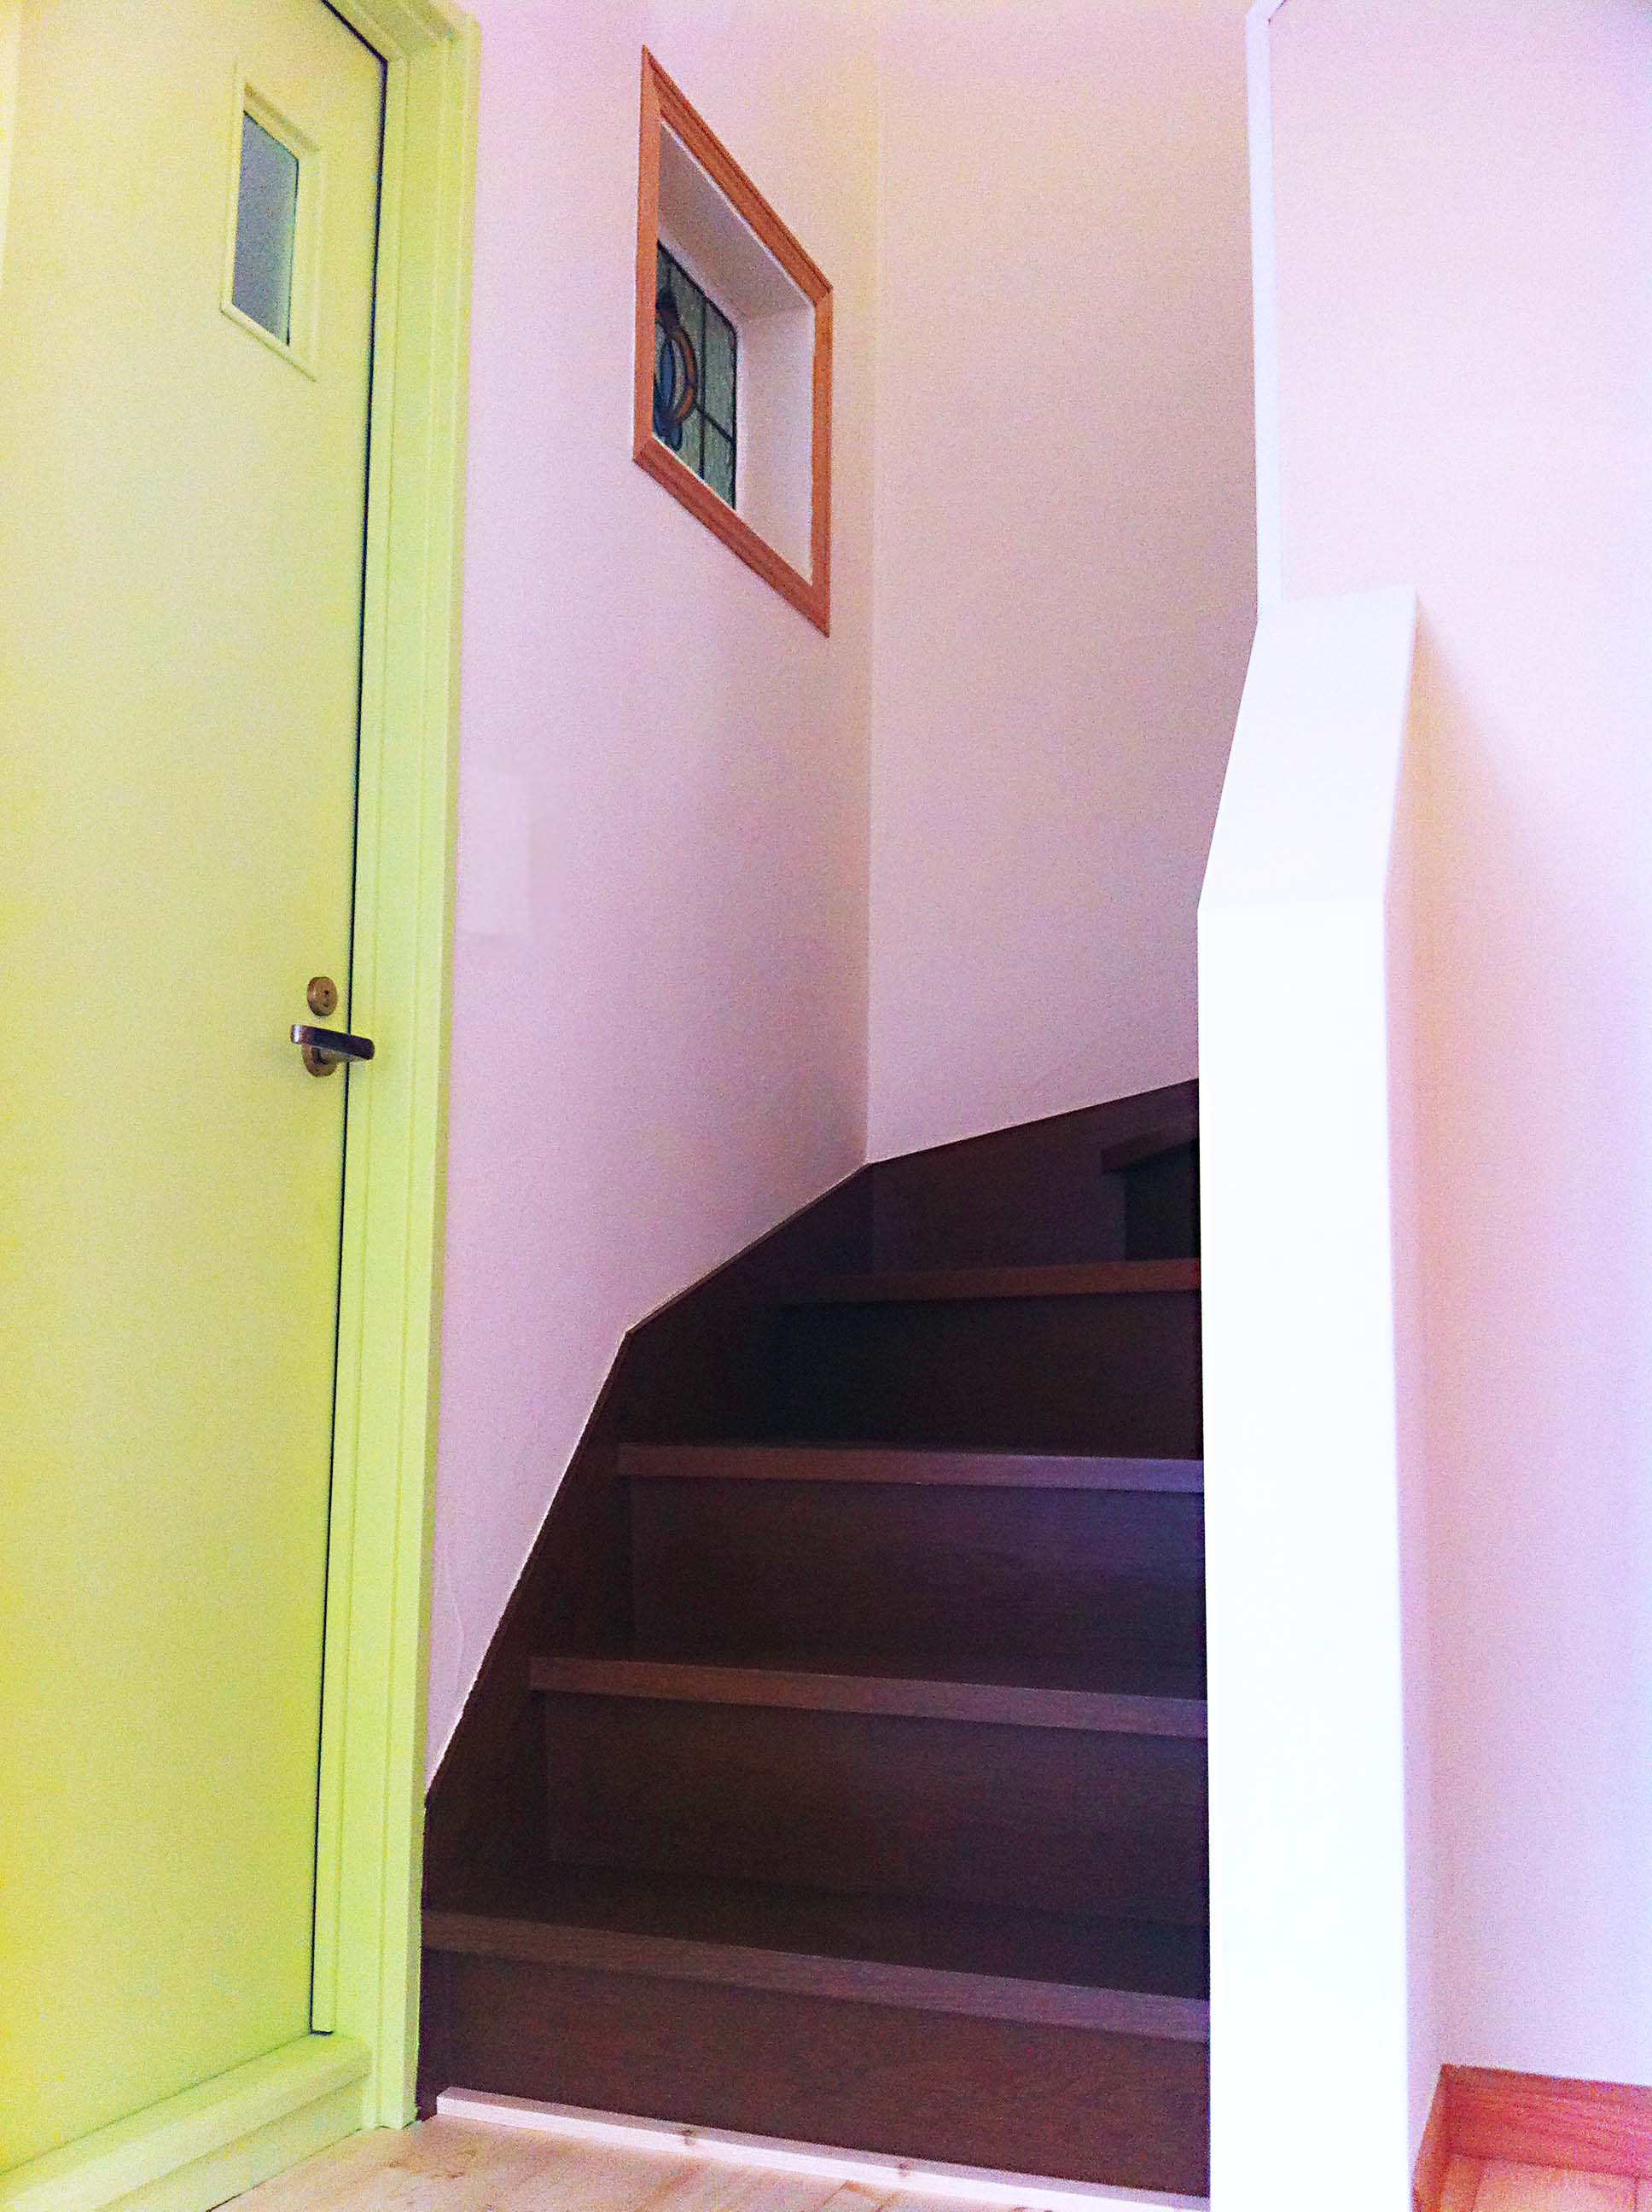 階段下の扉の色と階段・壁の色がとてもオシャレです。